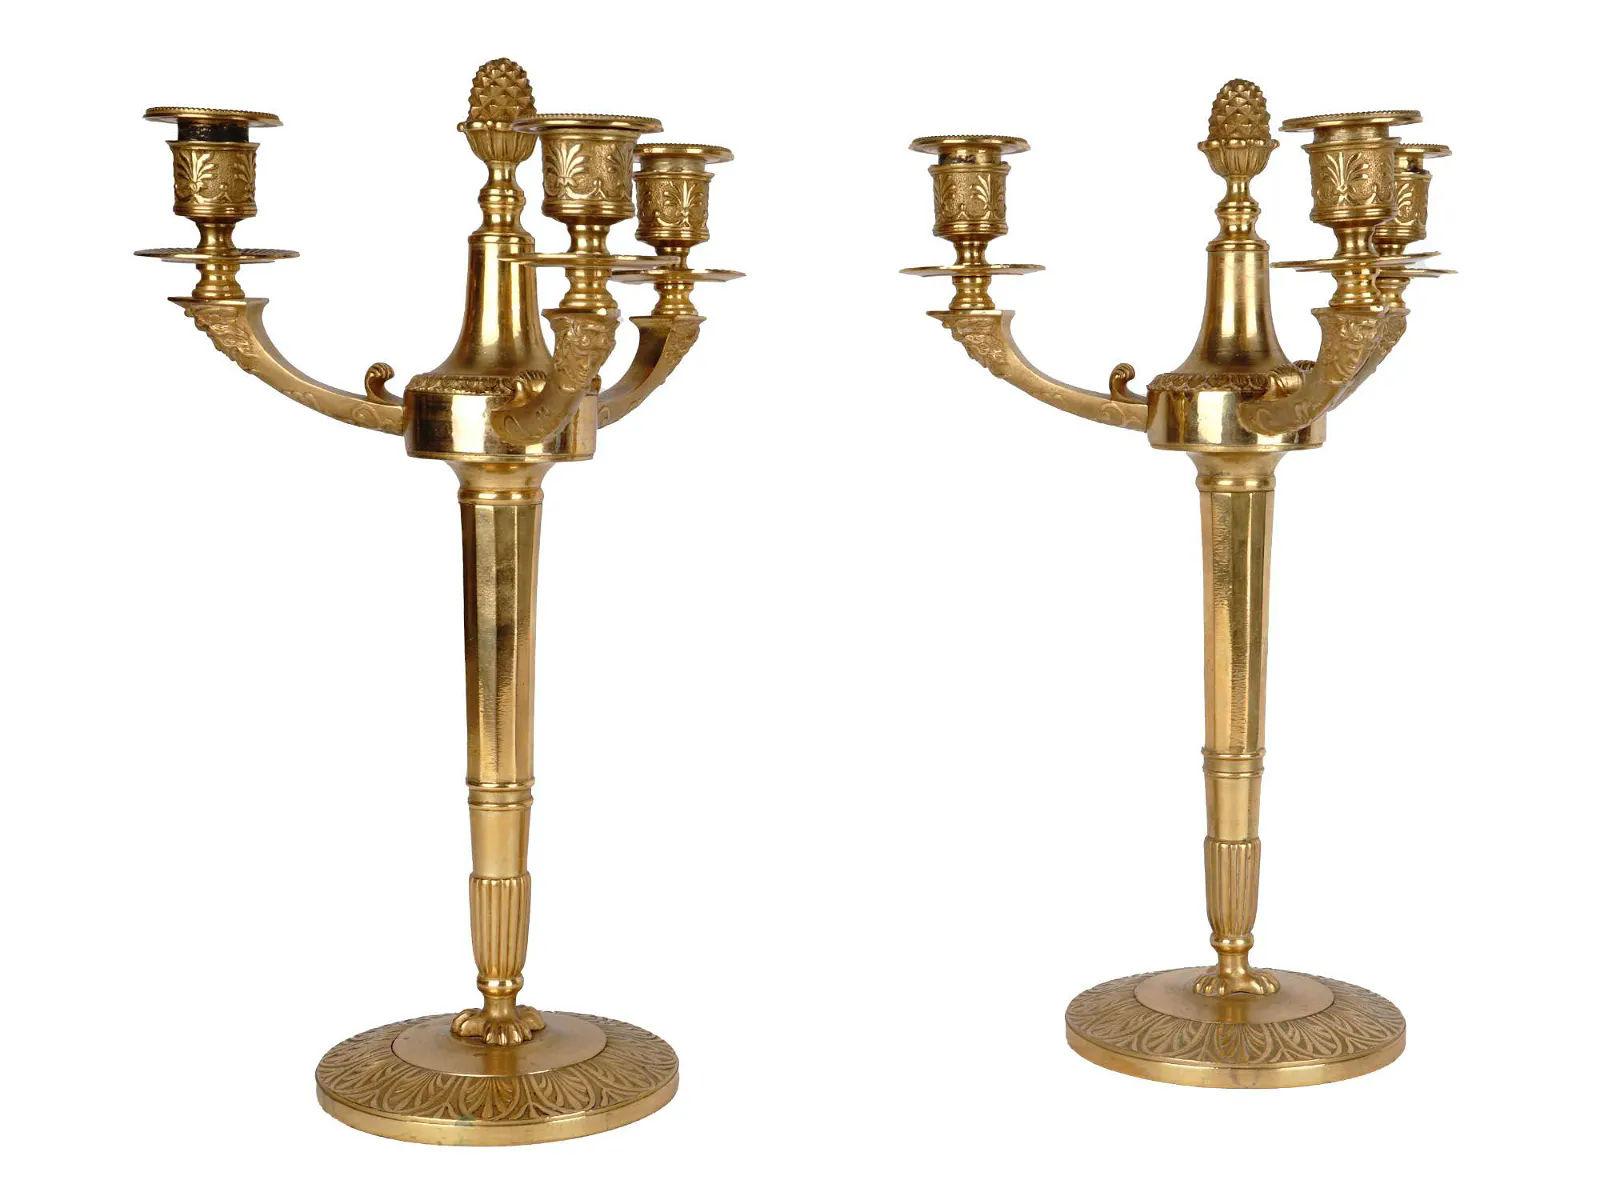 Paire d'exceptionnels candélabres français du XIXe siècle en bronze doré à trois lumières de style Empire, vers les années 1860.  

